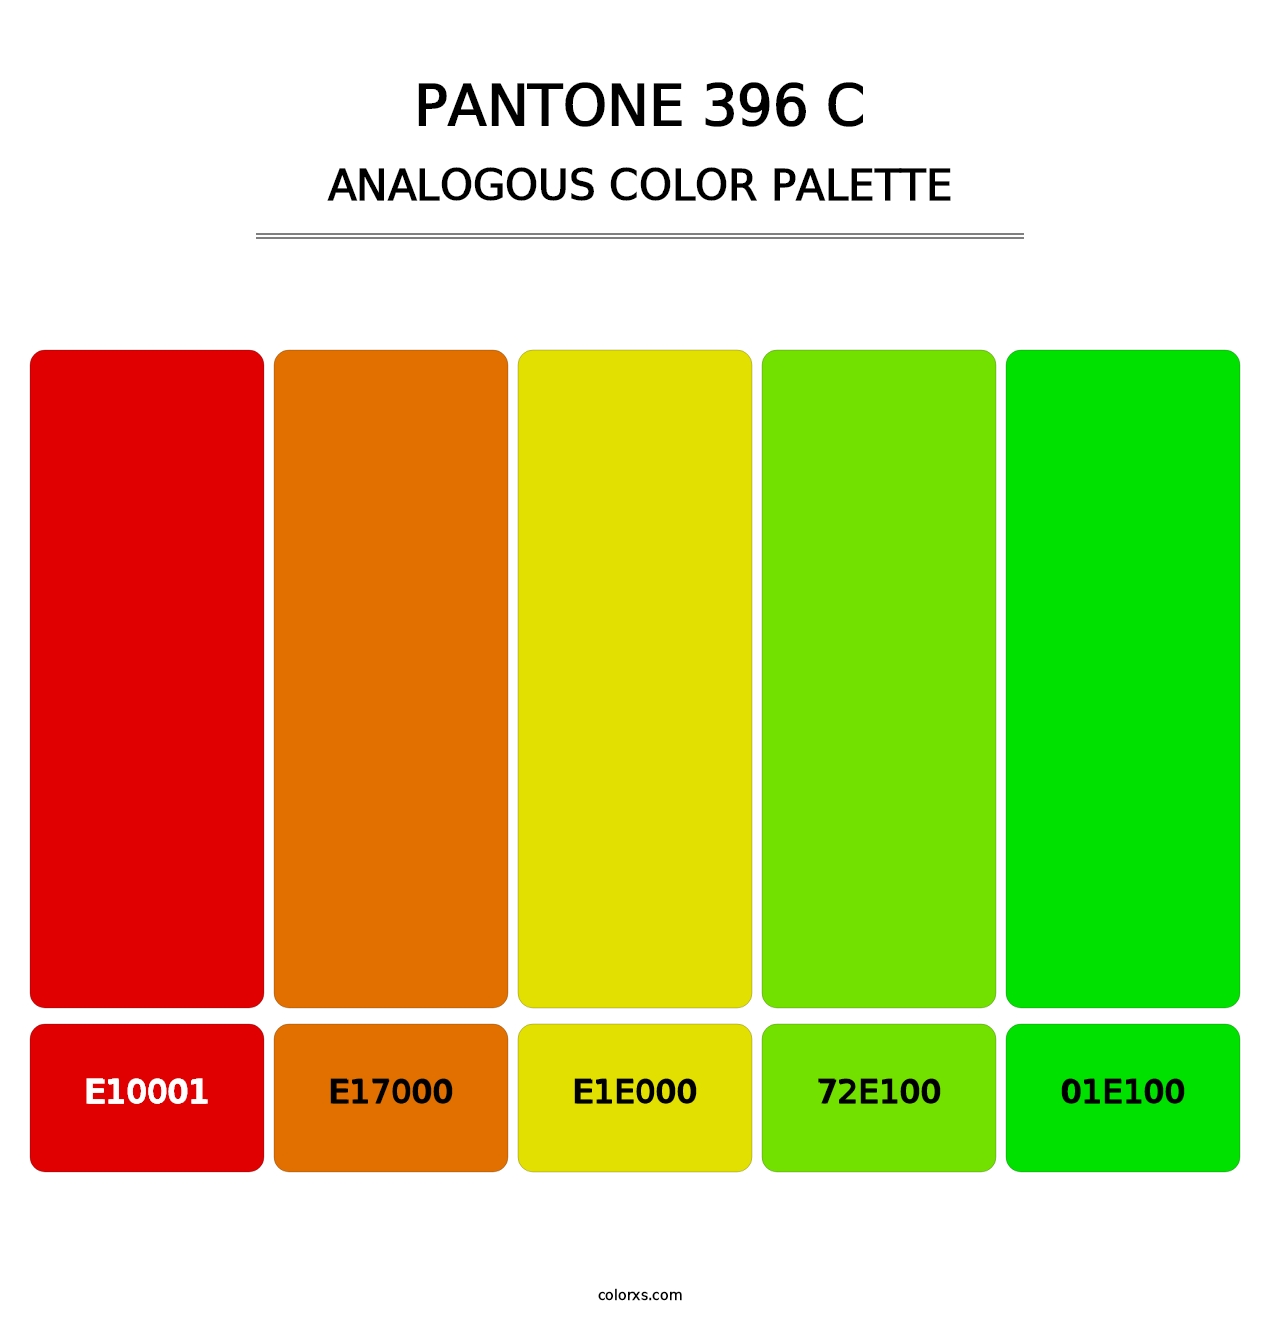 PANTONE 396 C - Analogous Color Palette